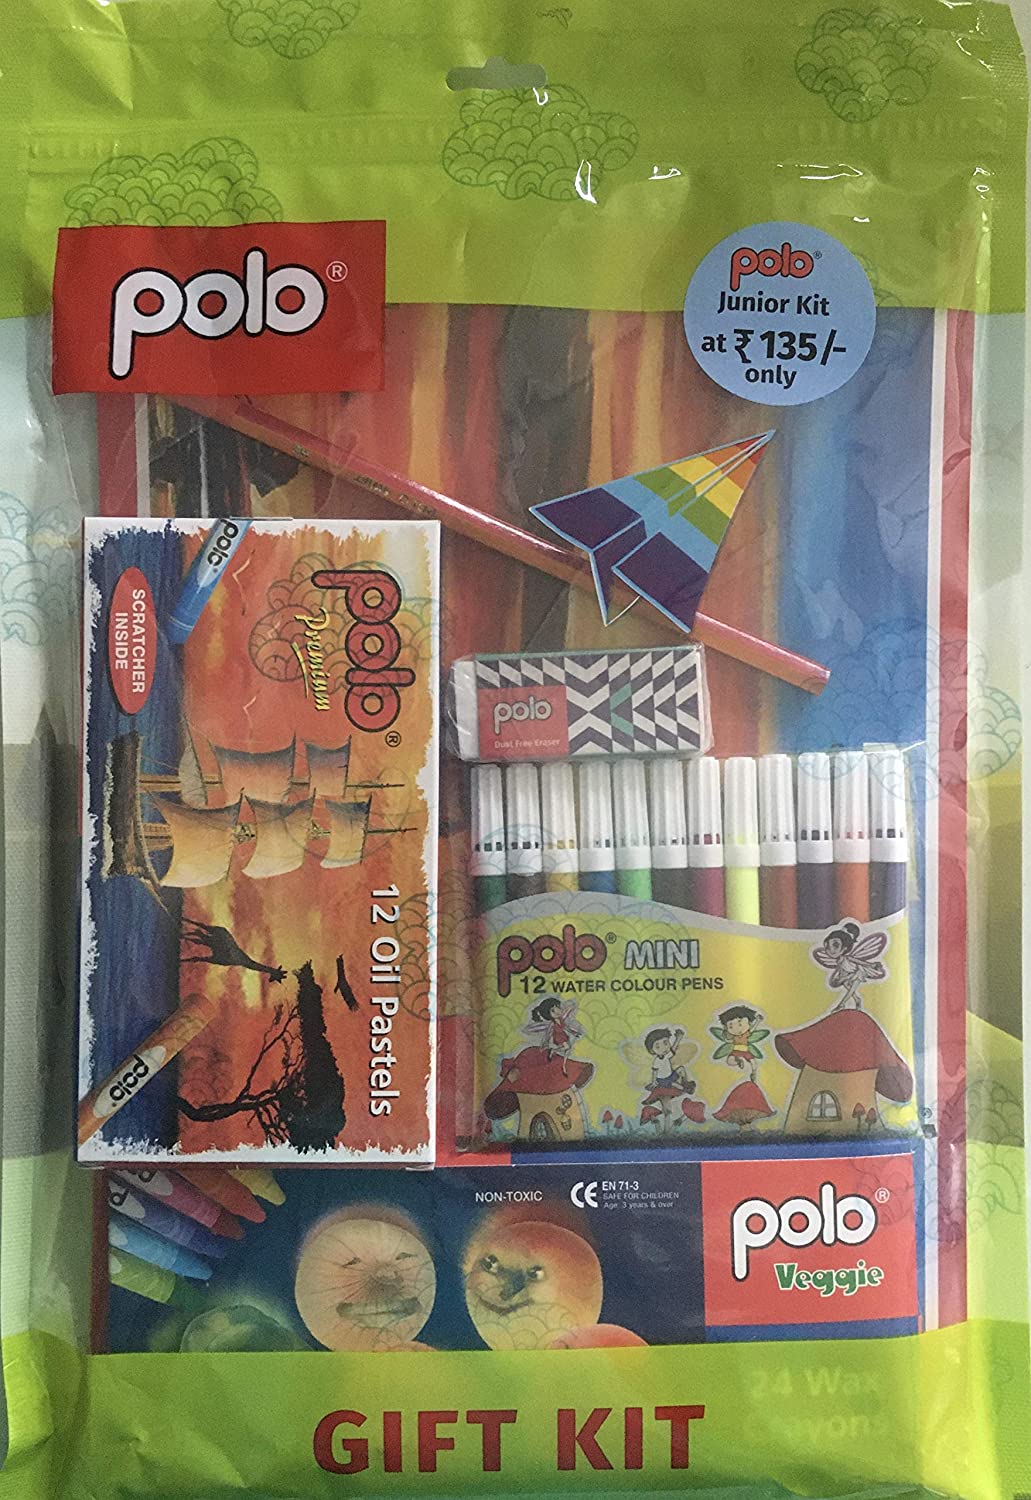 Polo gift kit